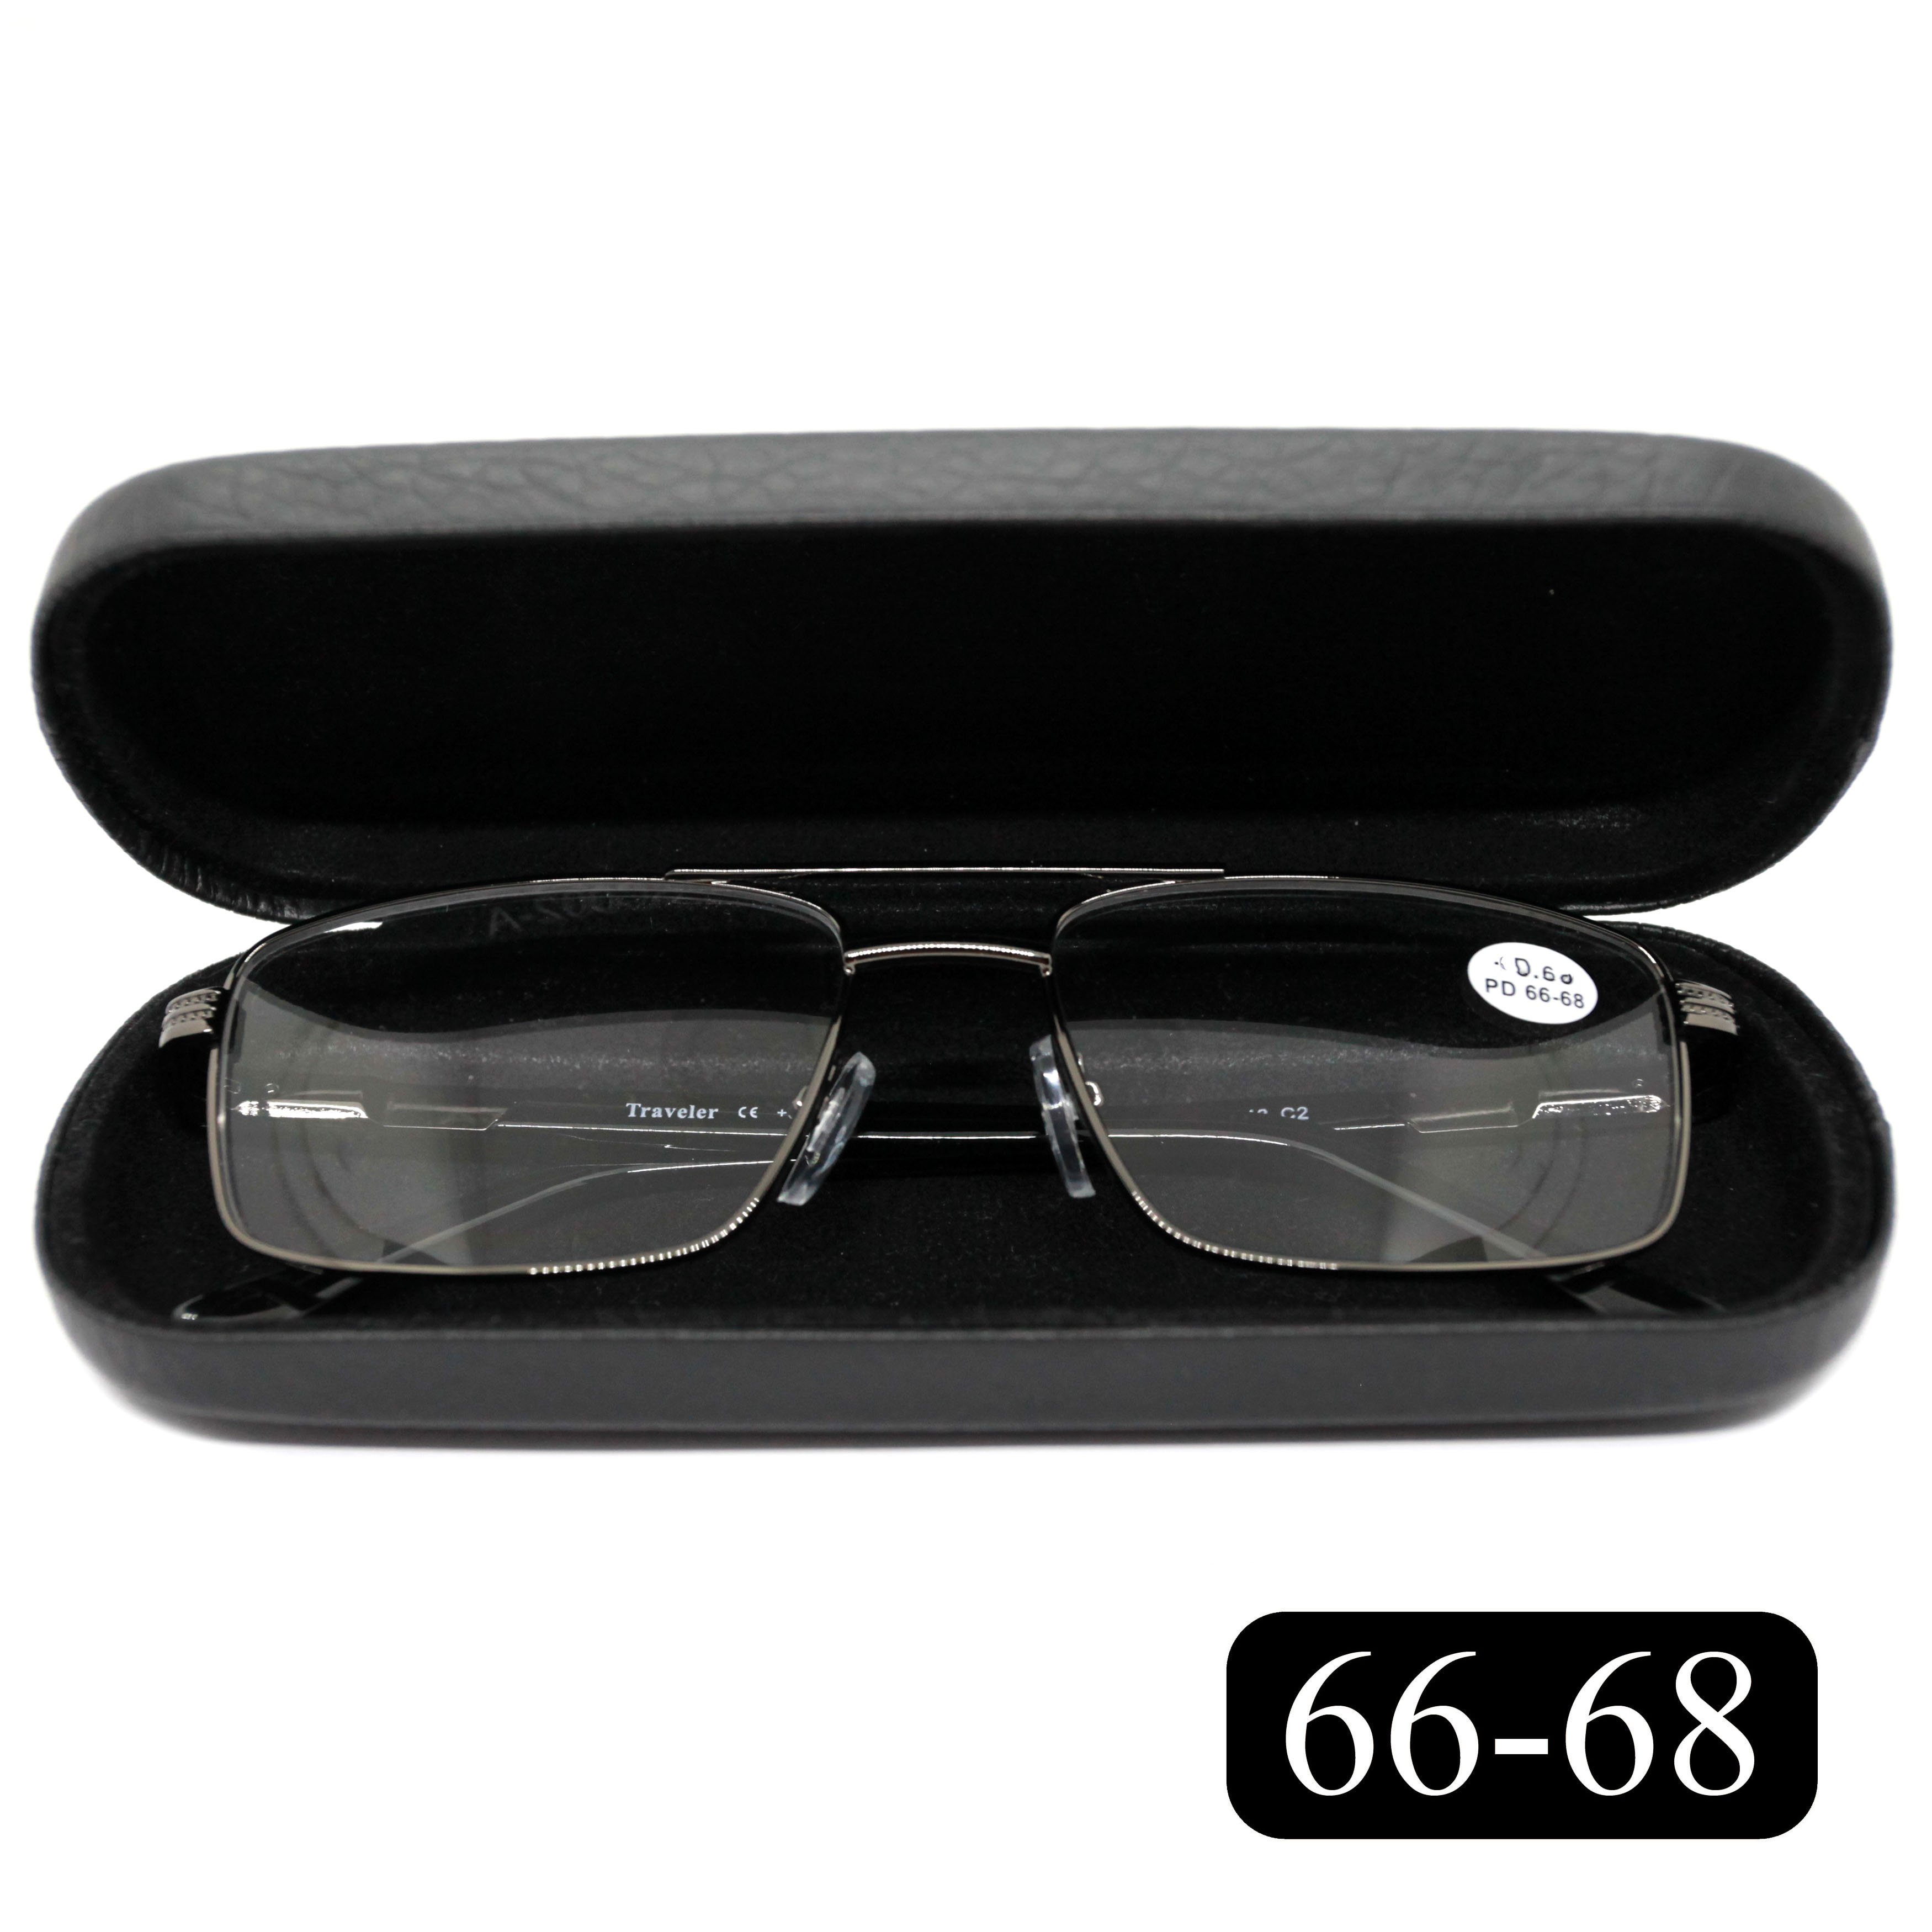 Очки для зрения Traveler 8020 -2.00, c футляром, цвет серый, РЦ 66-68